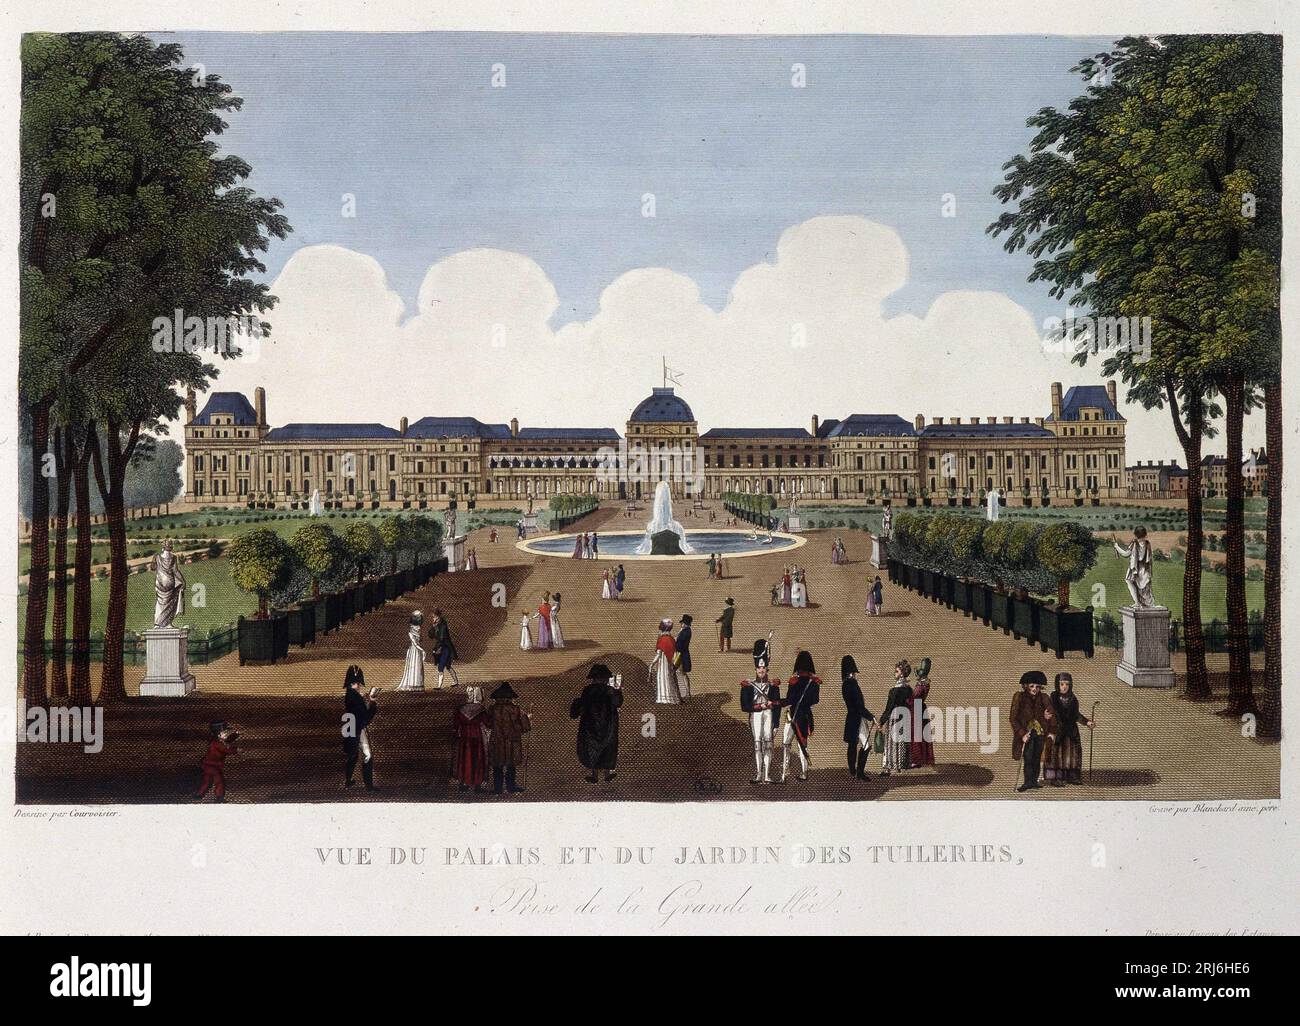 Vue du palais et du jardin des Tuileries - dans 'Vues de Paris' par Courvoisier, 1827 Banque D'Images